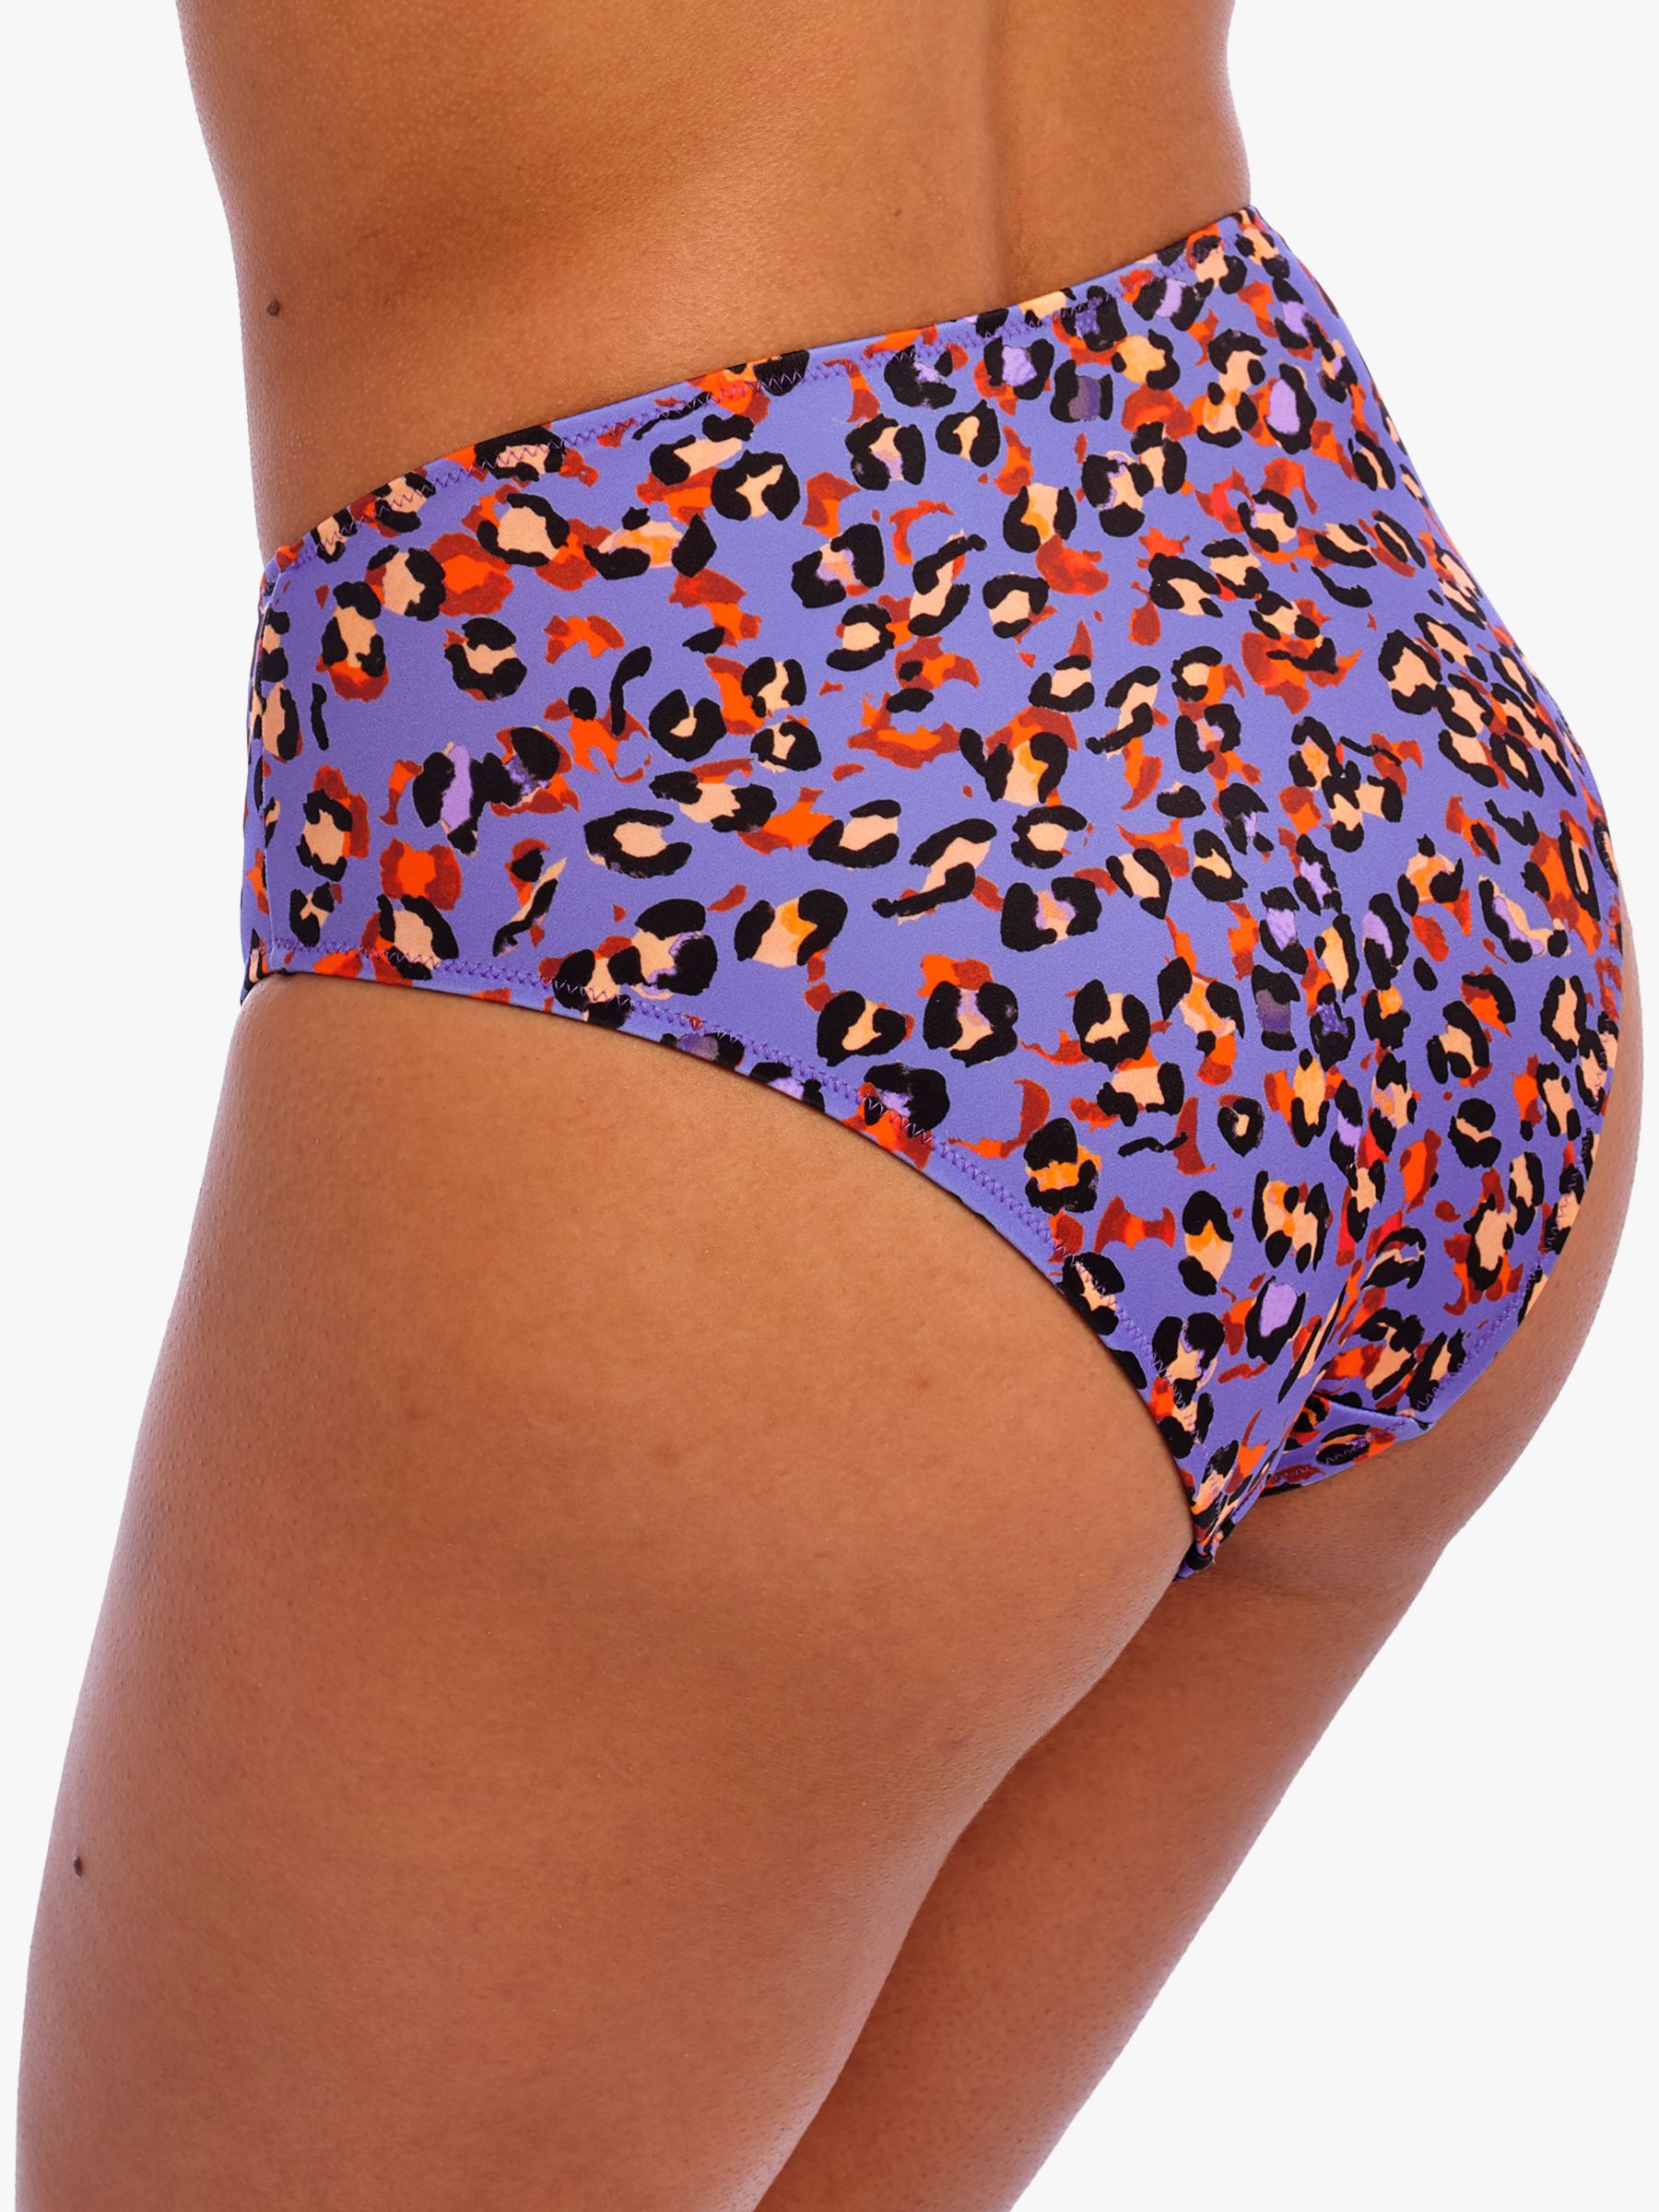 Freya San Tiago Nights Leopard Print High Waist Bikini Bottoms, Blue/Multi, S